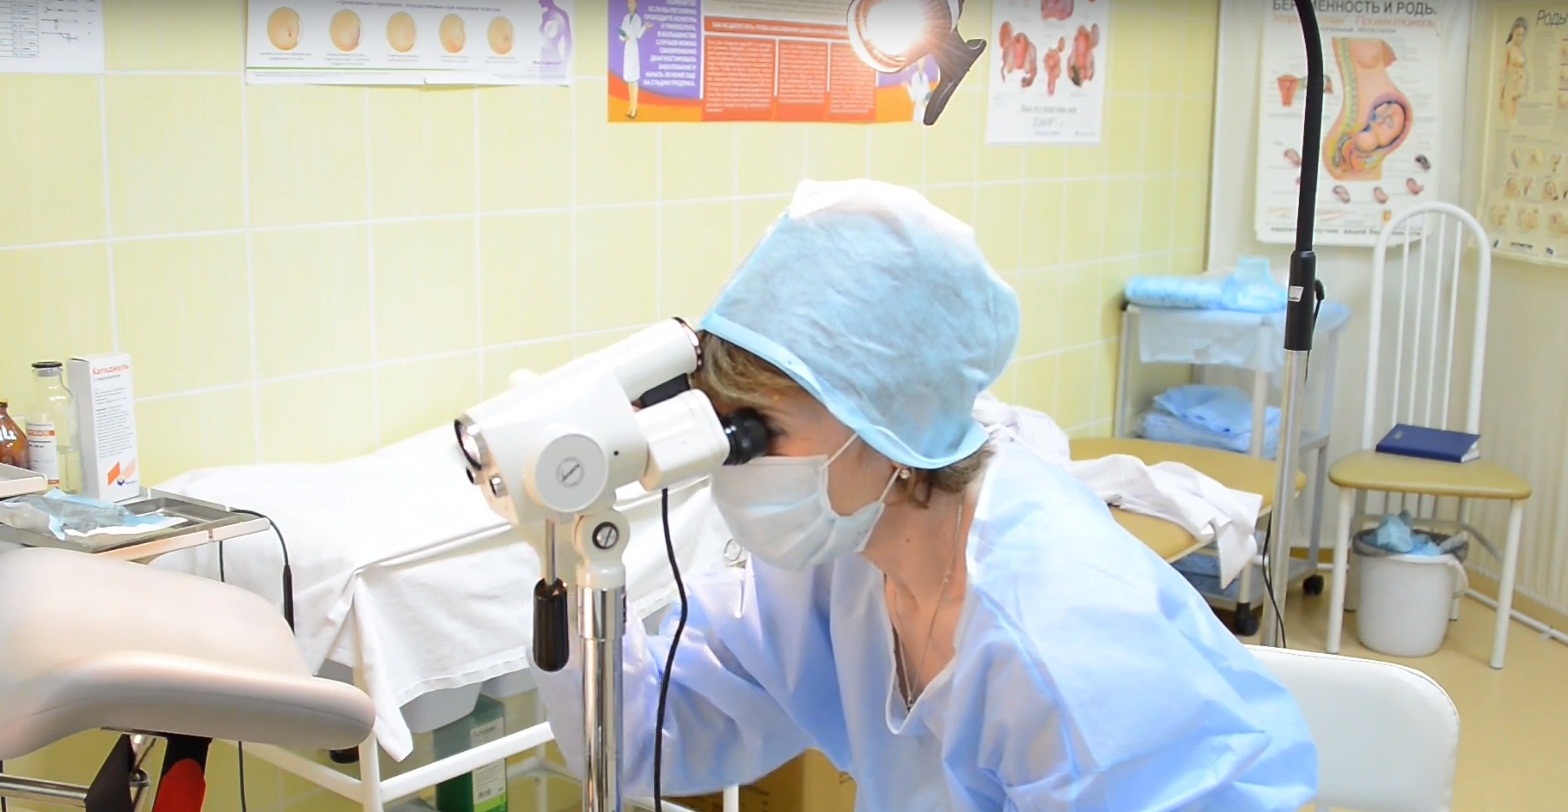 Кольпоскопія матки - діагностичний огляд шийки матки і стінок піхви через оптичний прилад під бінокулярним збільшенням